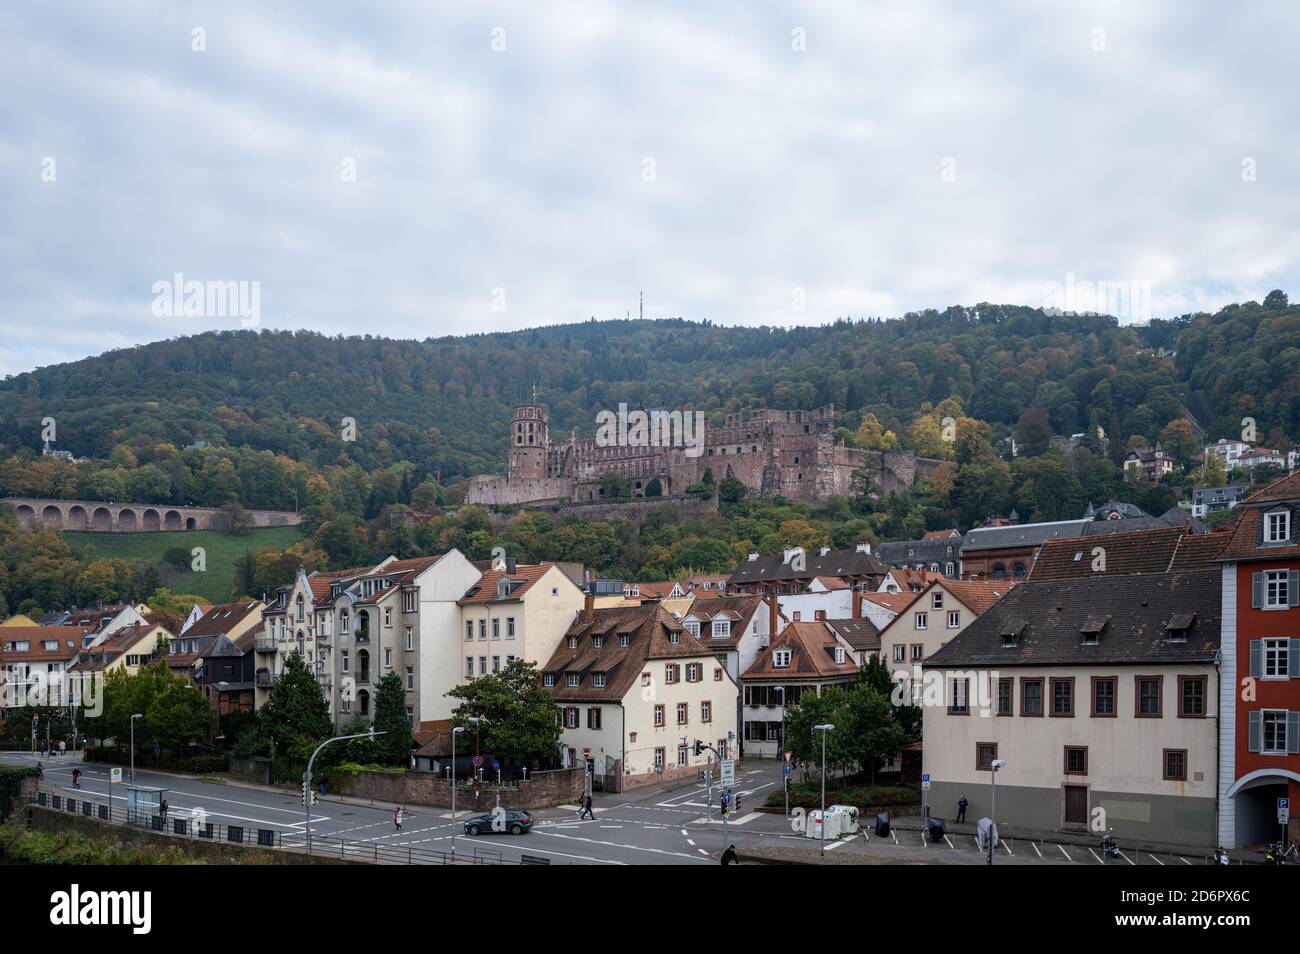 Reisen, Deutschland, Badenwürtemberg, Heidelberg, Alte Brücke, October 18. Das Schloss in Heidelberg im Herbst. Von der Alten Brücke aus gesehen, die Stock Photo